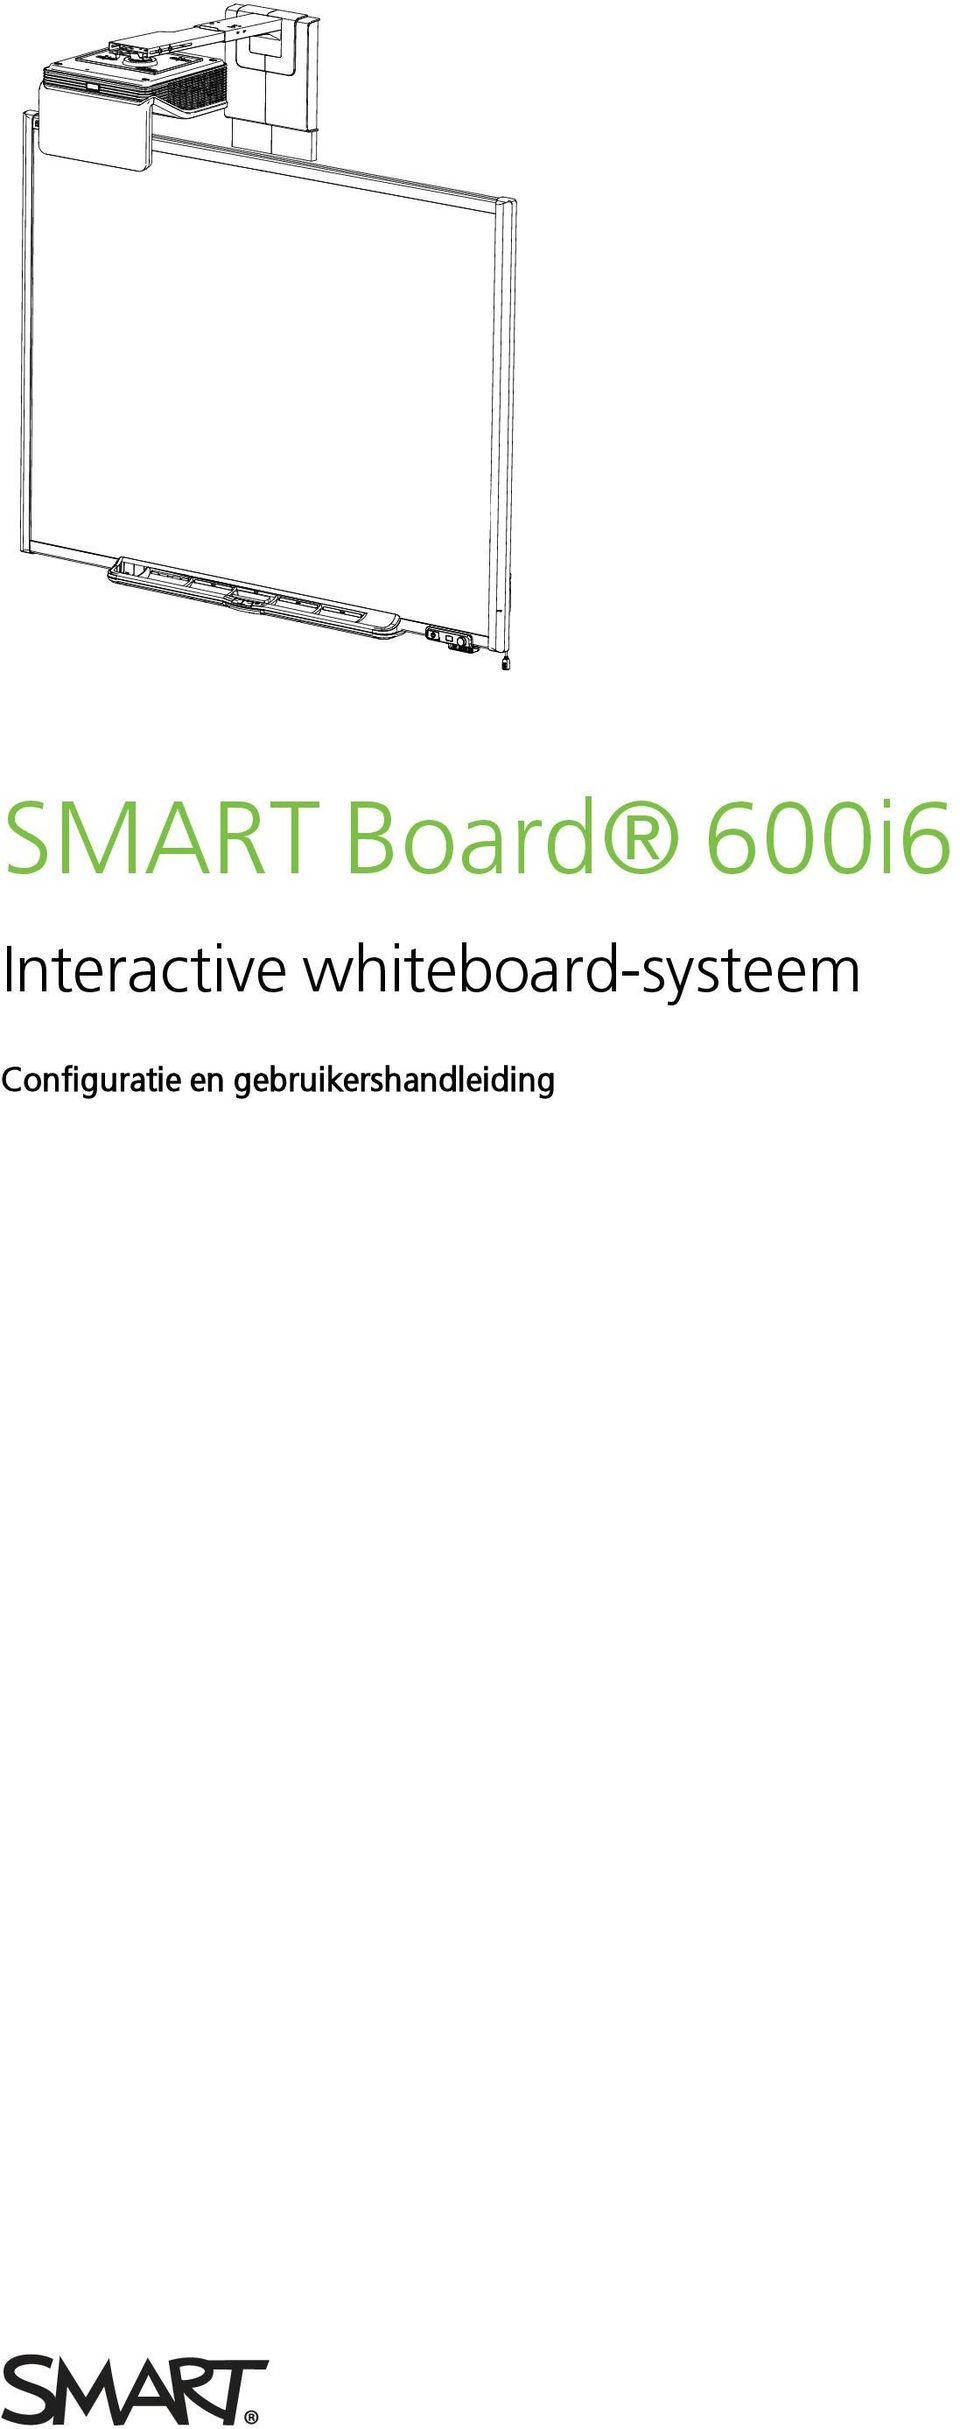 whiteboard-systeem